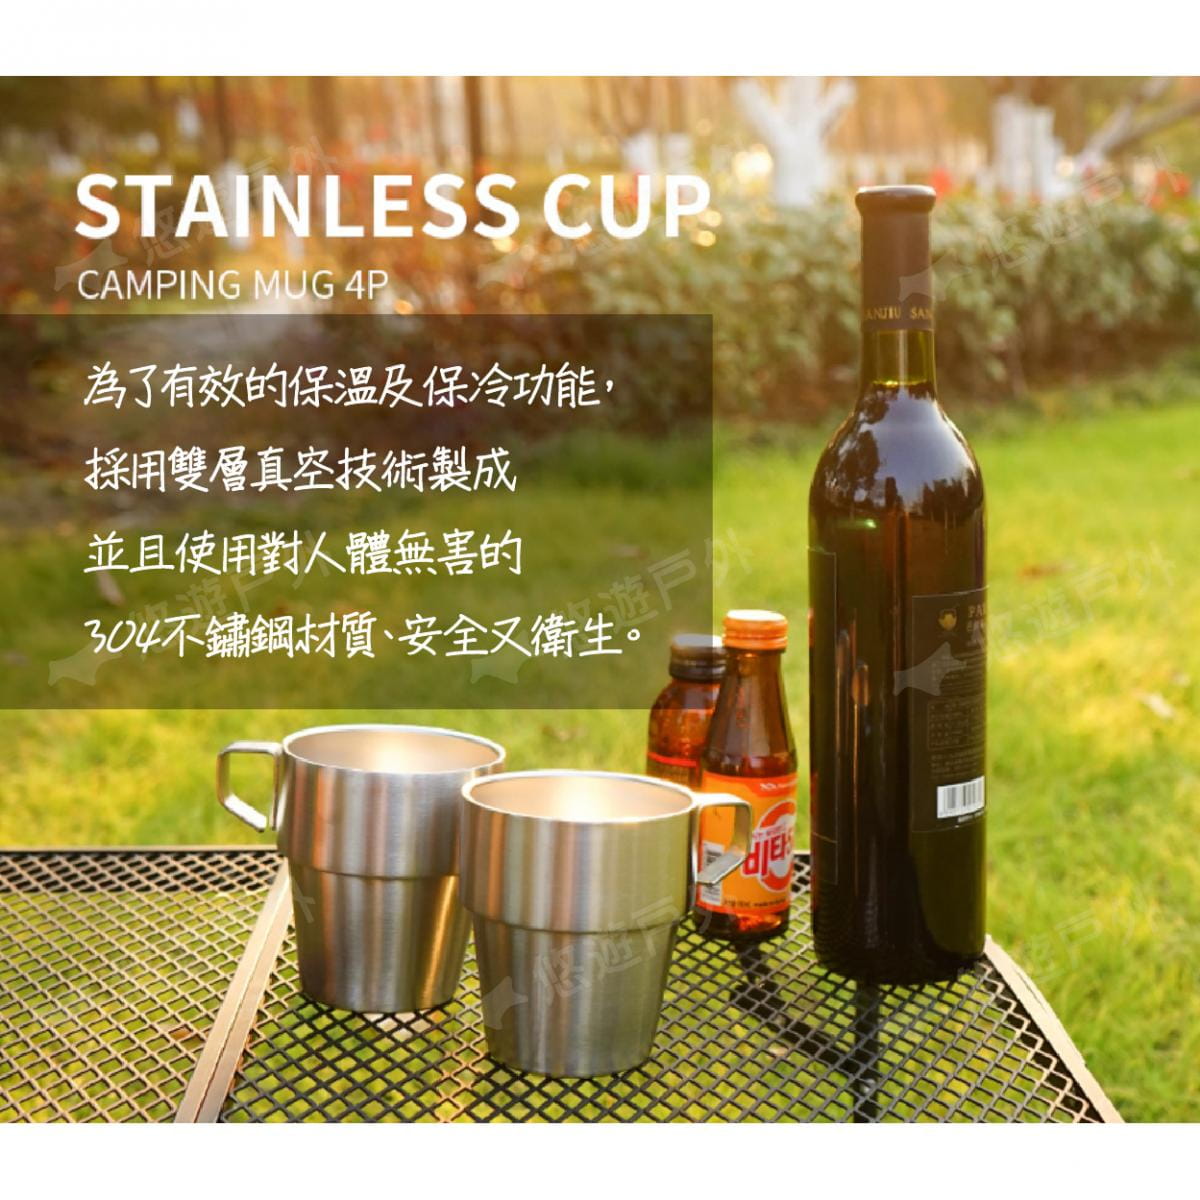 【CLS】304 不鏽鋼 雙層咖啡杯 4入組 含杯架+收納袋 不鏽鋼杯 保溫杯 酒杯 露營 野炊 1